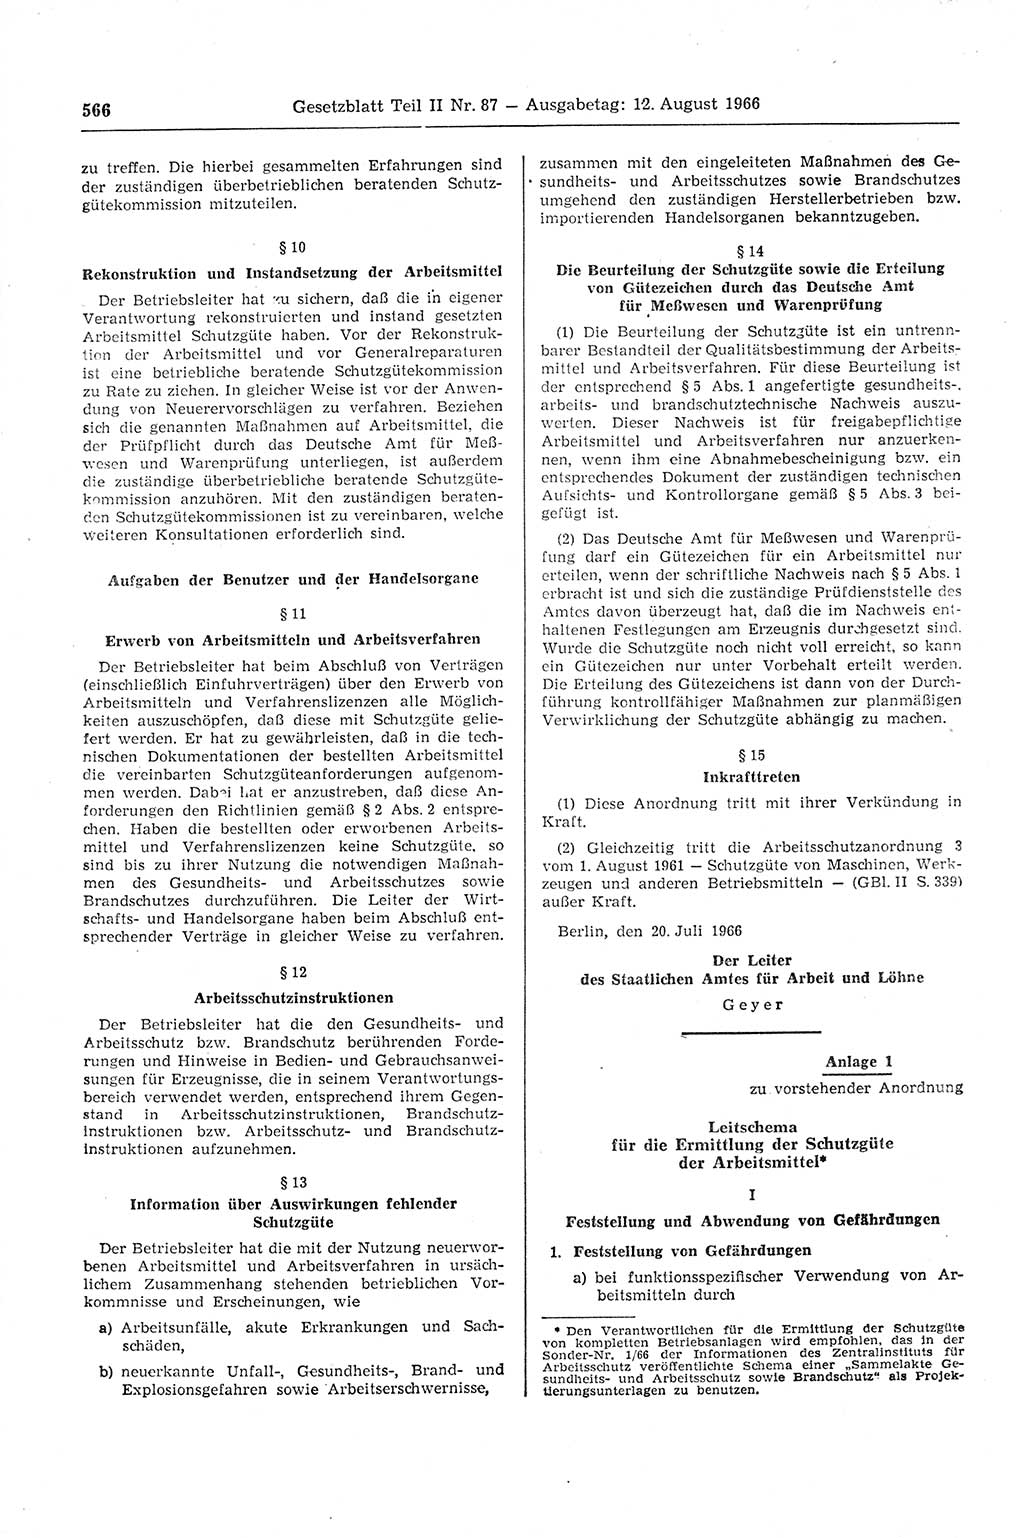 Gesetzblatt (GBl.) der Deutschen Demokratischen Republik (DDR) Teil ⅠⅠ 1966, Seite 566 (GBl. DDR ⅠⅠ 1966, S. 566)